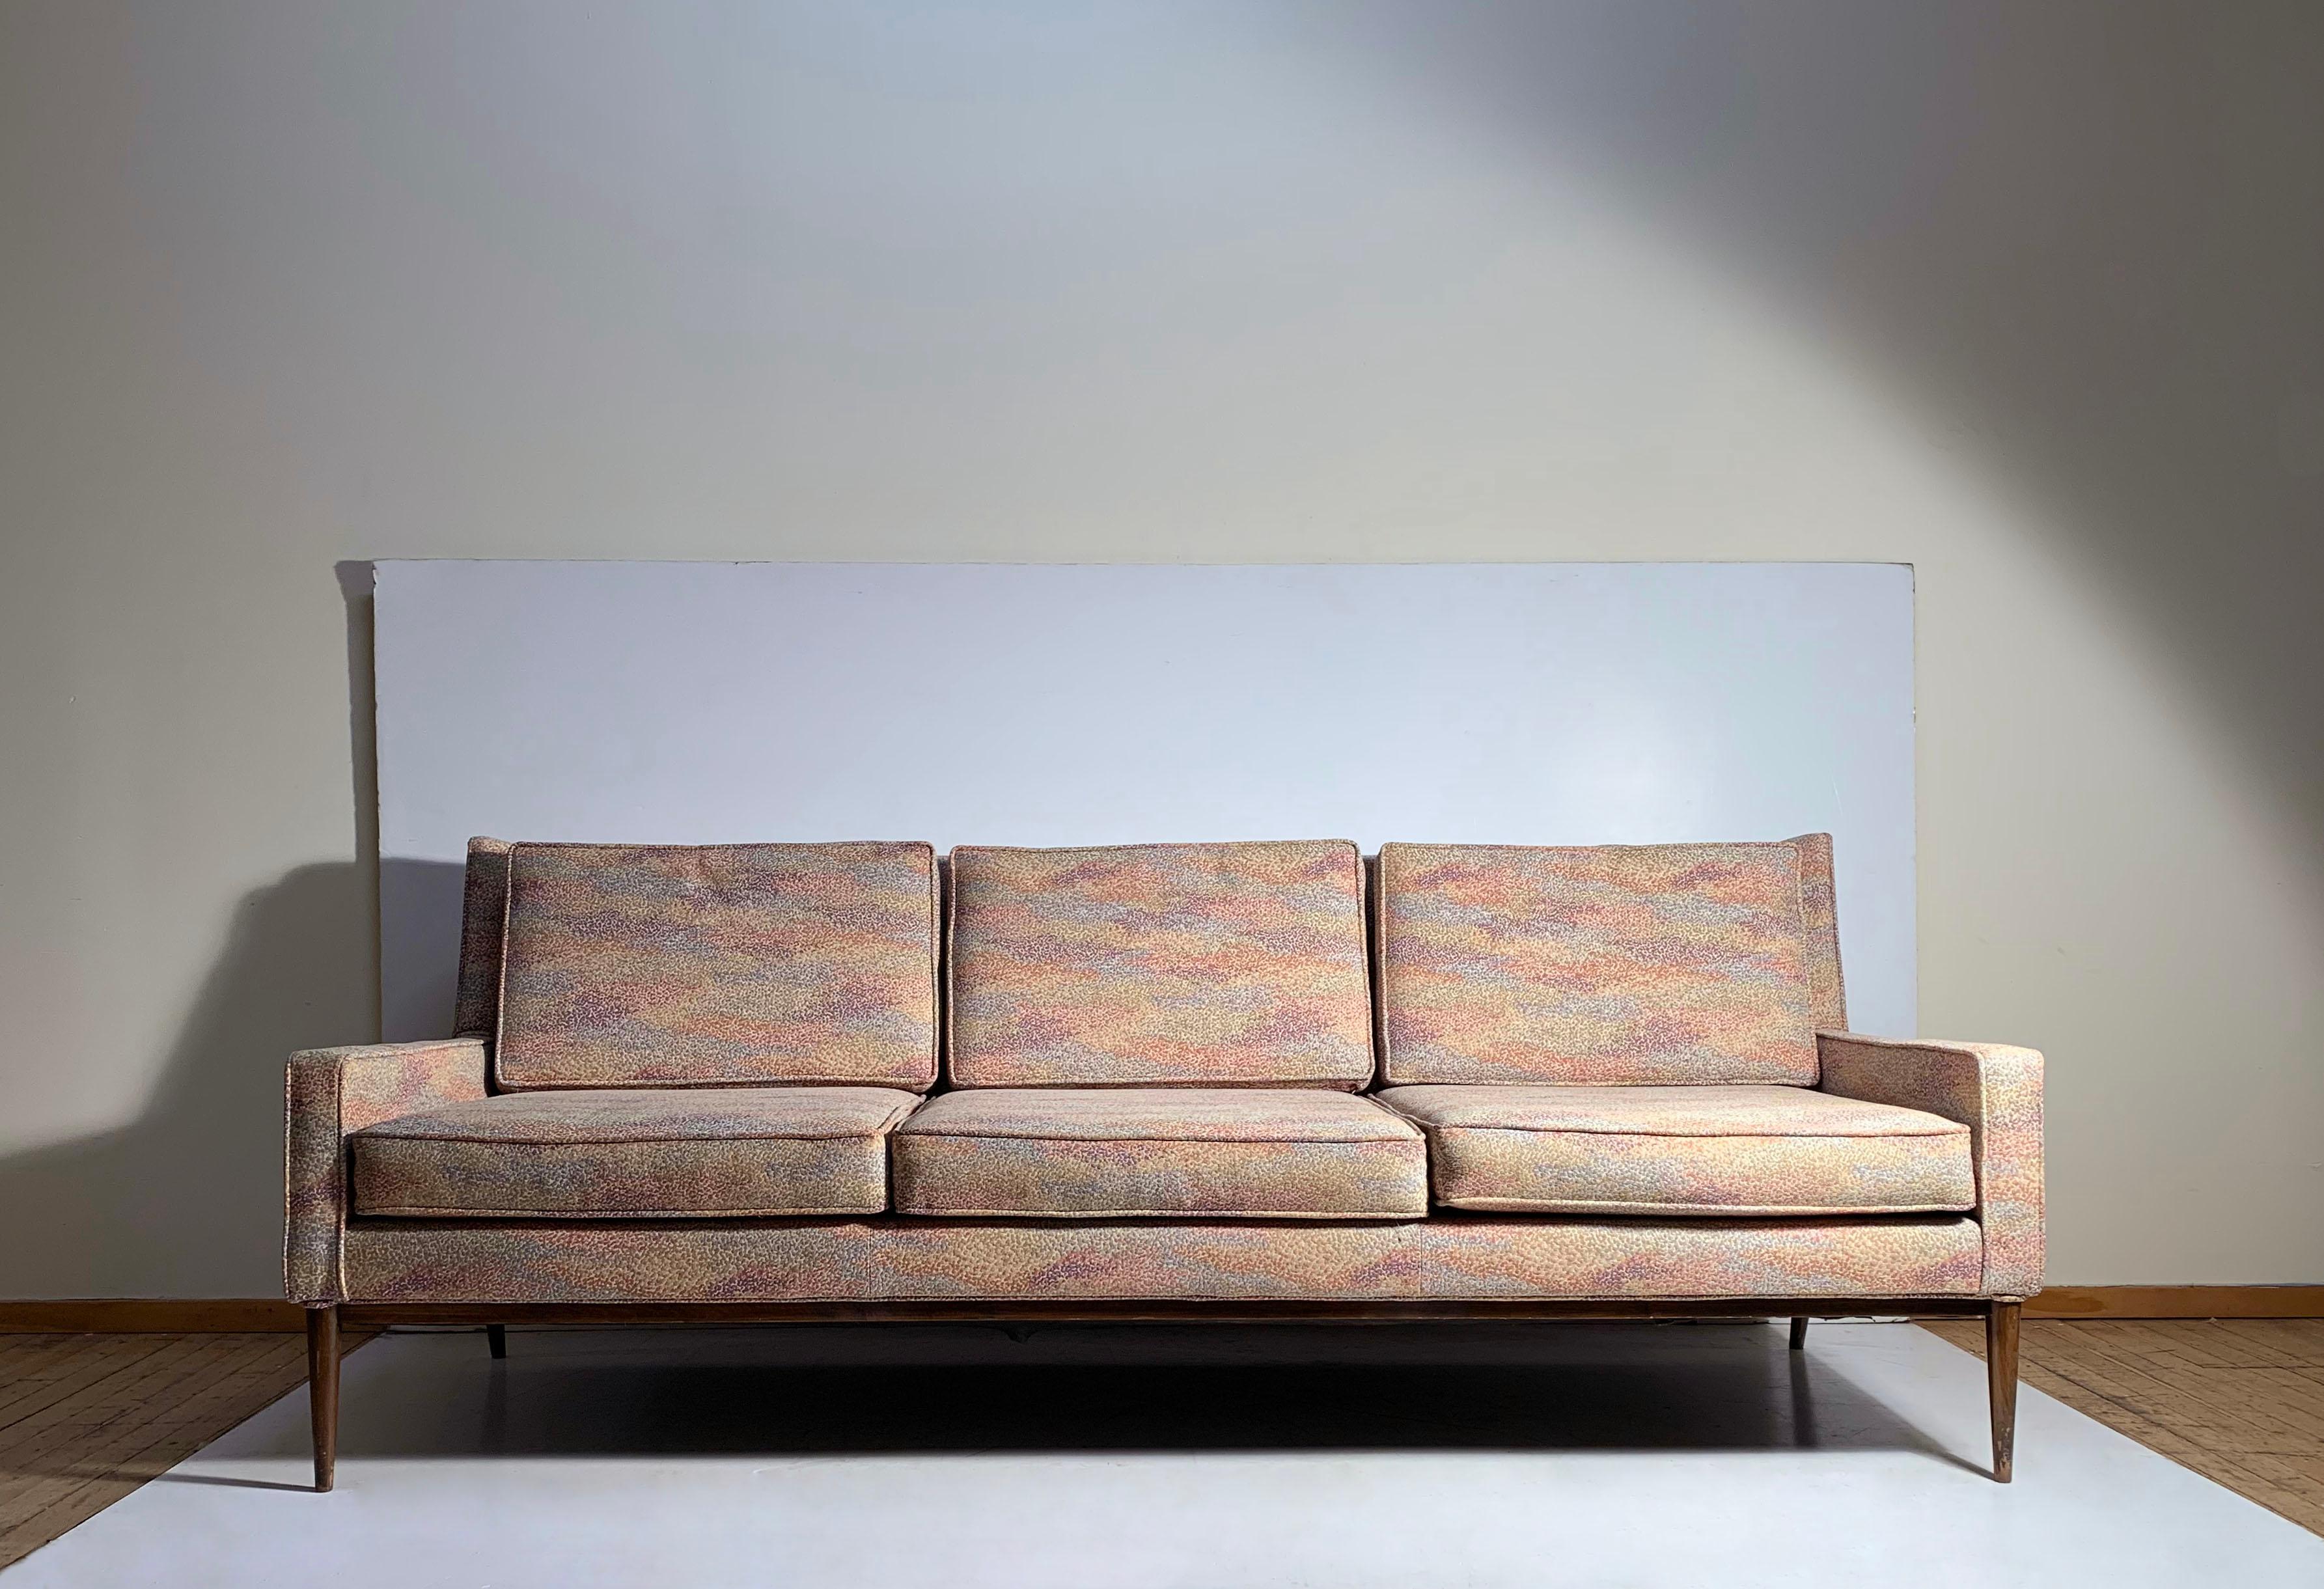 Vintage Paul McCobb Sofa für Directional

irgendwann einmal neu gepolstert. In ziemlich gutem Zustand mit Stoff zu verwenden, wie es ist. geringe Abnutzung. 

Das Finish von Holz und Beinen weist einige Gebrauchsspuren auf.

